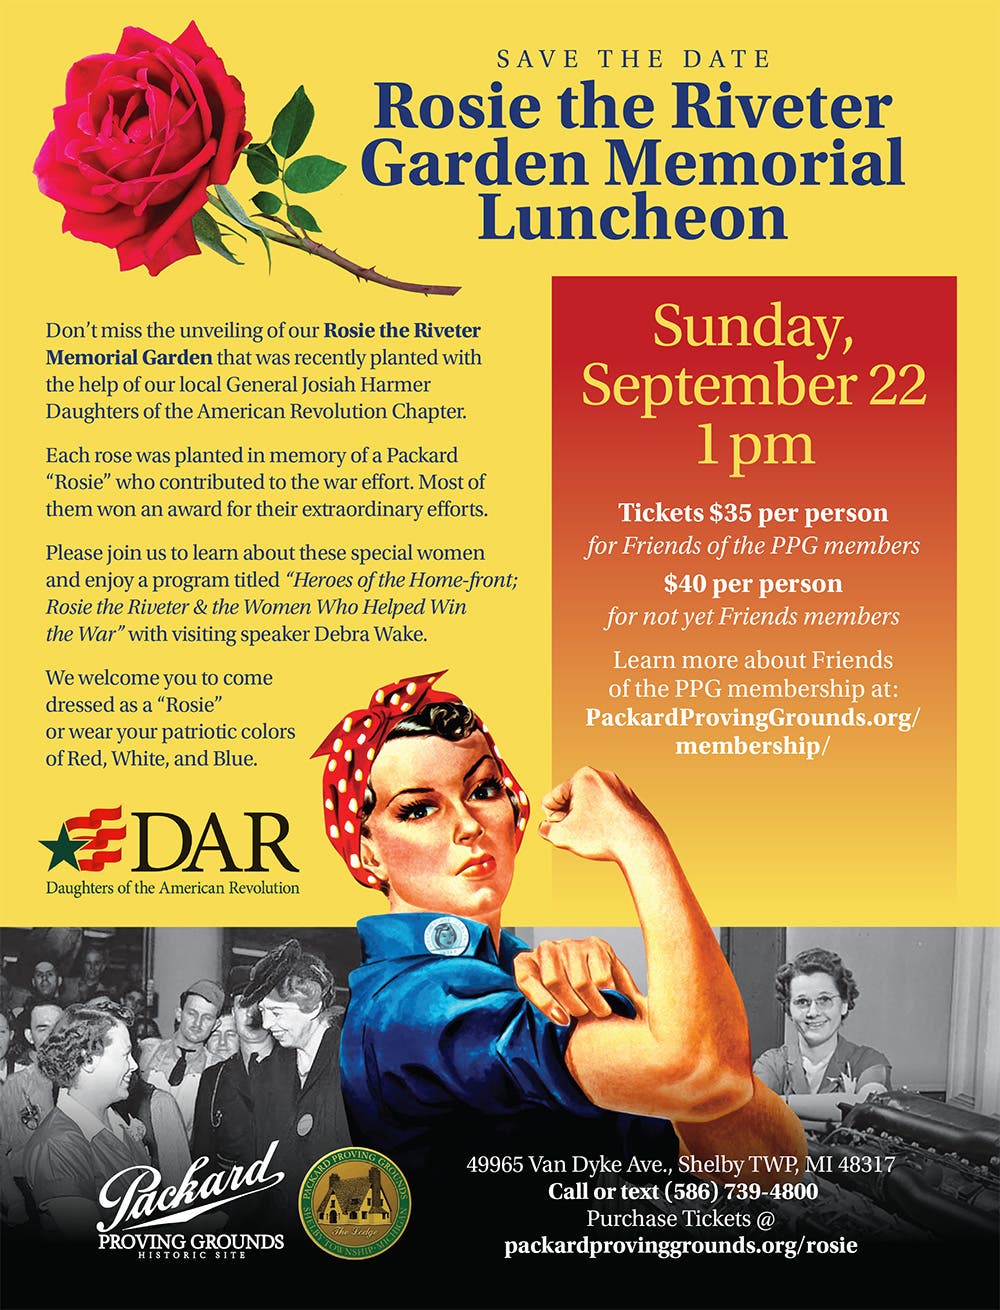 Rosie the Riveter Garden Memorial Luncheon